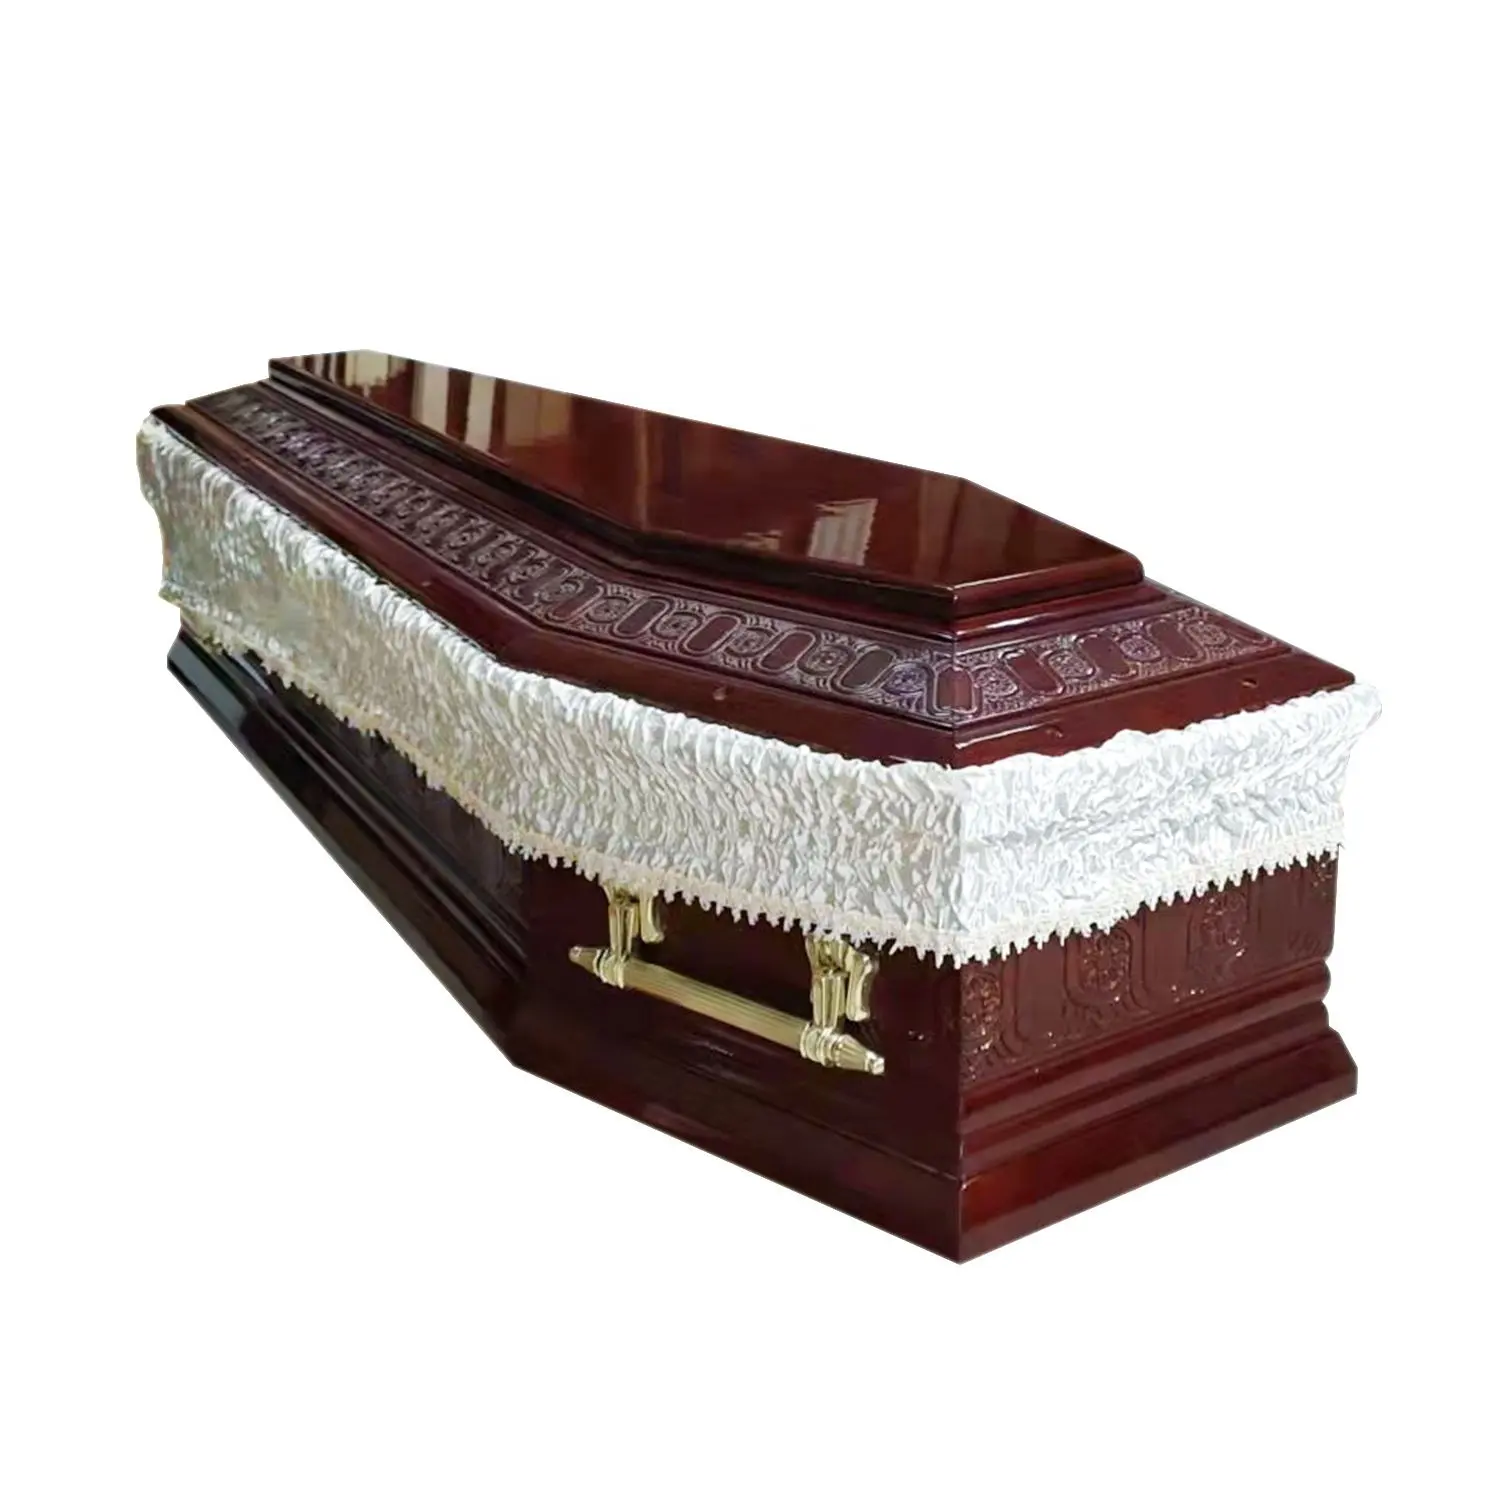 Vendas diretas do fabricante de caixões funerários de alta qualidade caixões de madeira